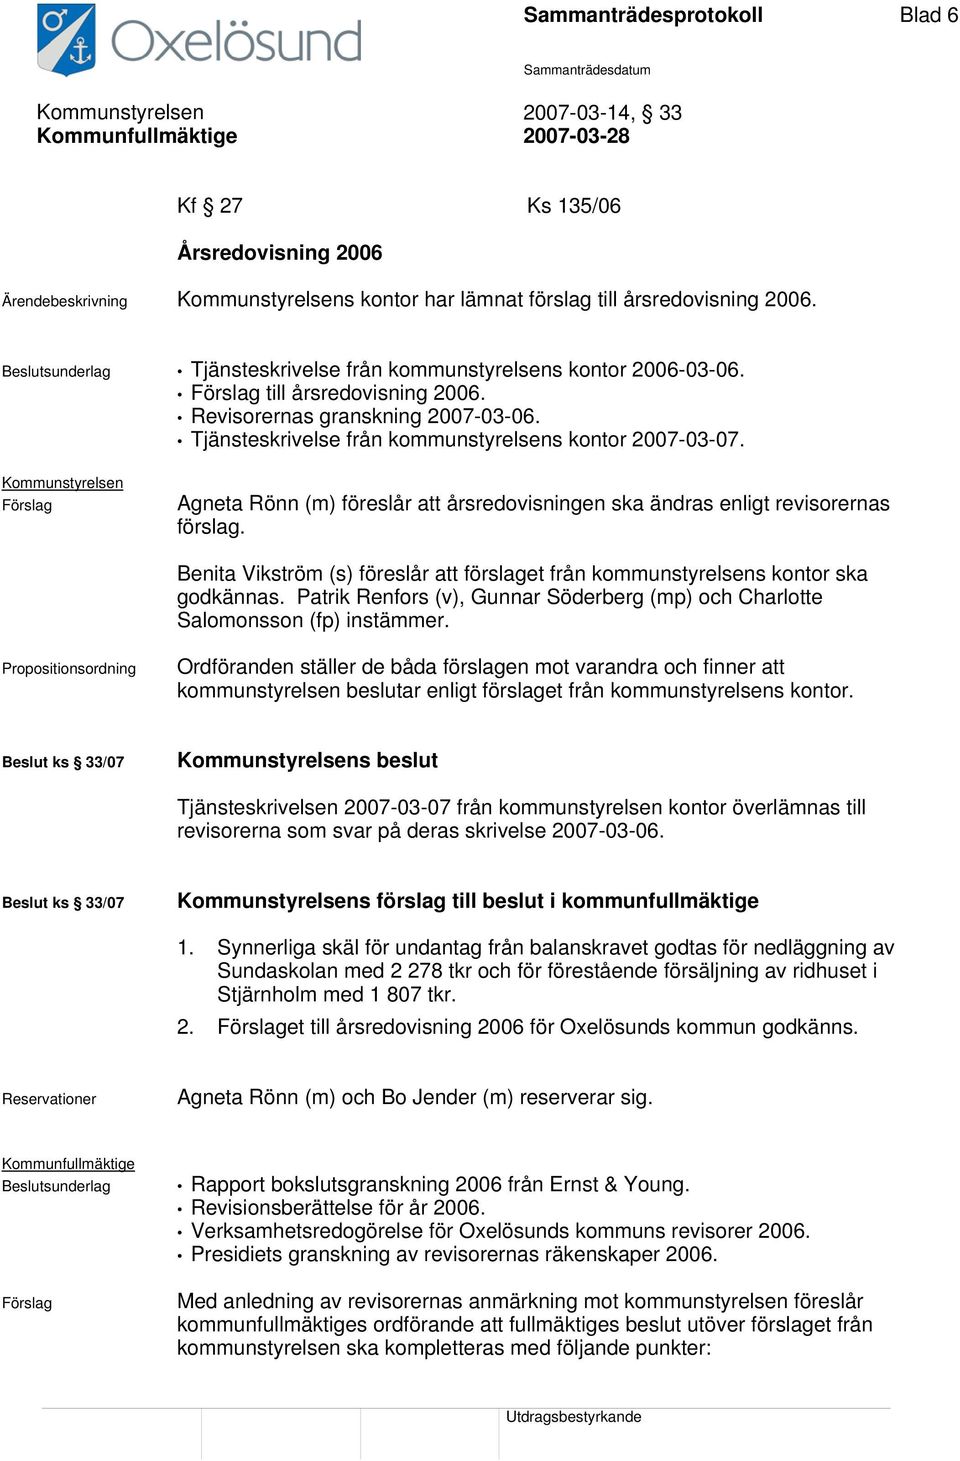 Tjänsteskrivelse från kommunstyrelsens kontor 2007-03-07. Förslag Agneta Rönn (m) föreslår att årsredovisningen ska ändras enligt revisorernas förslag.